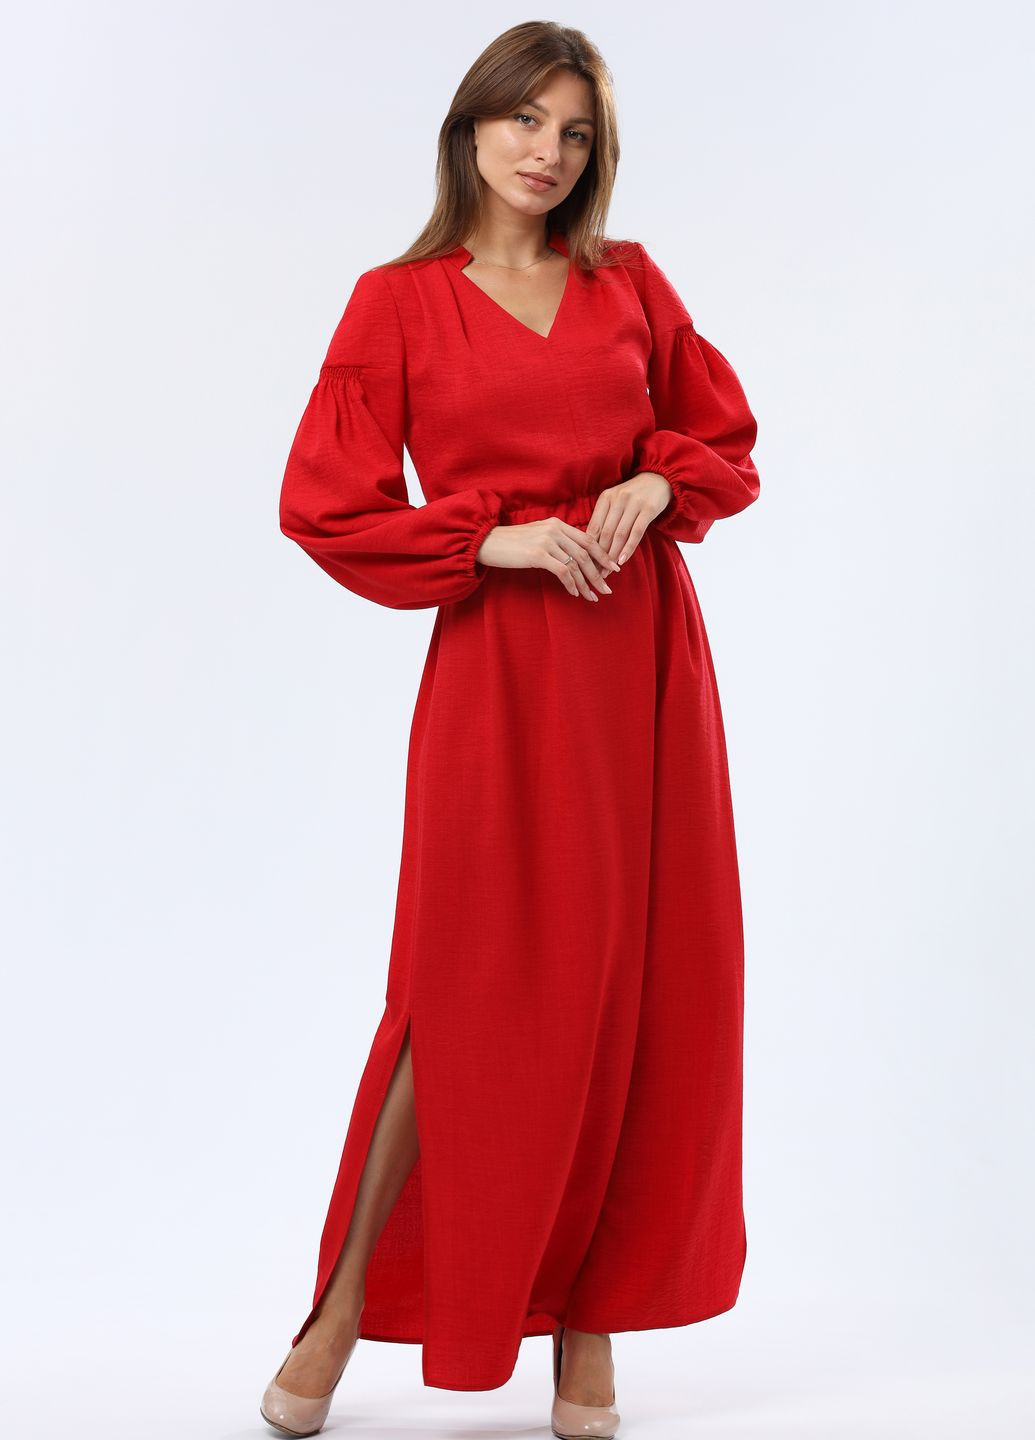 Червона коктейльна червона сукня максі з віскозної тканини з фактурною жатою структурою 5752 Cat Orange однотонна